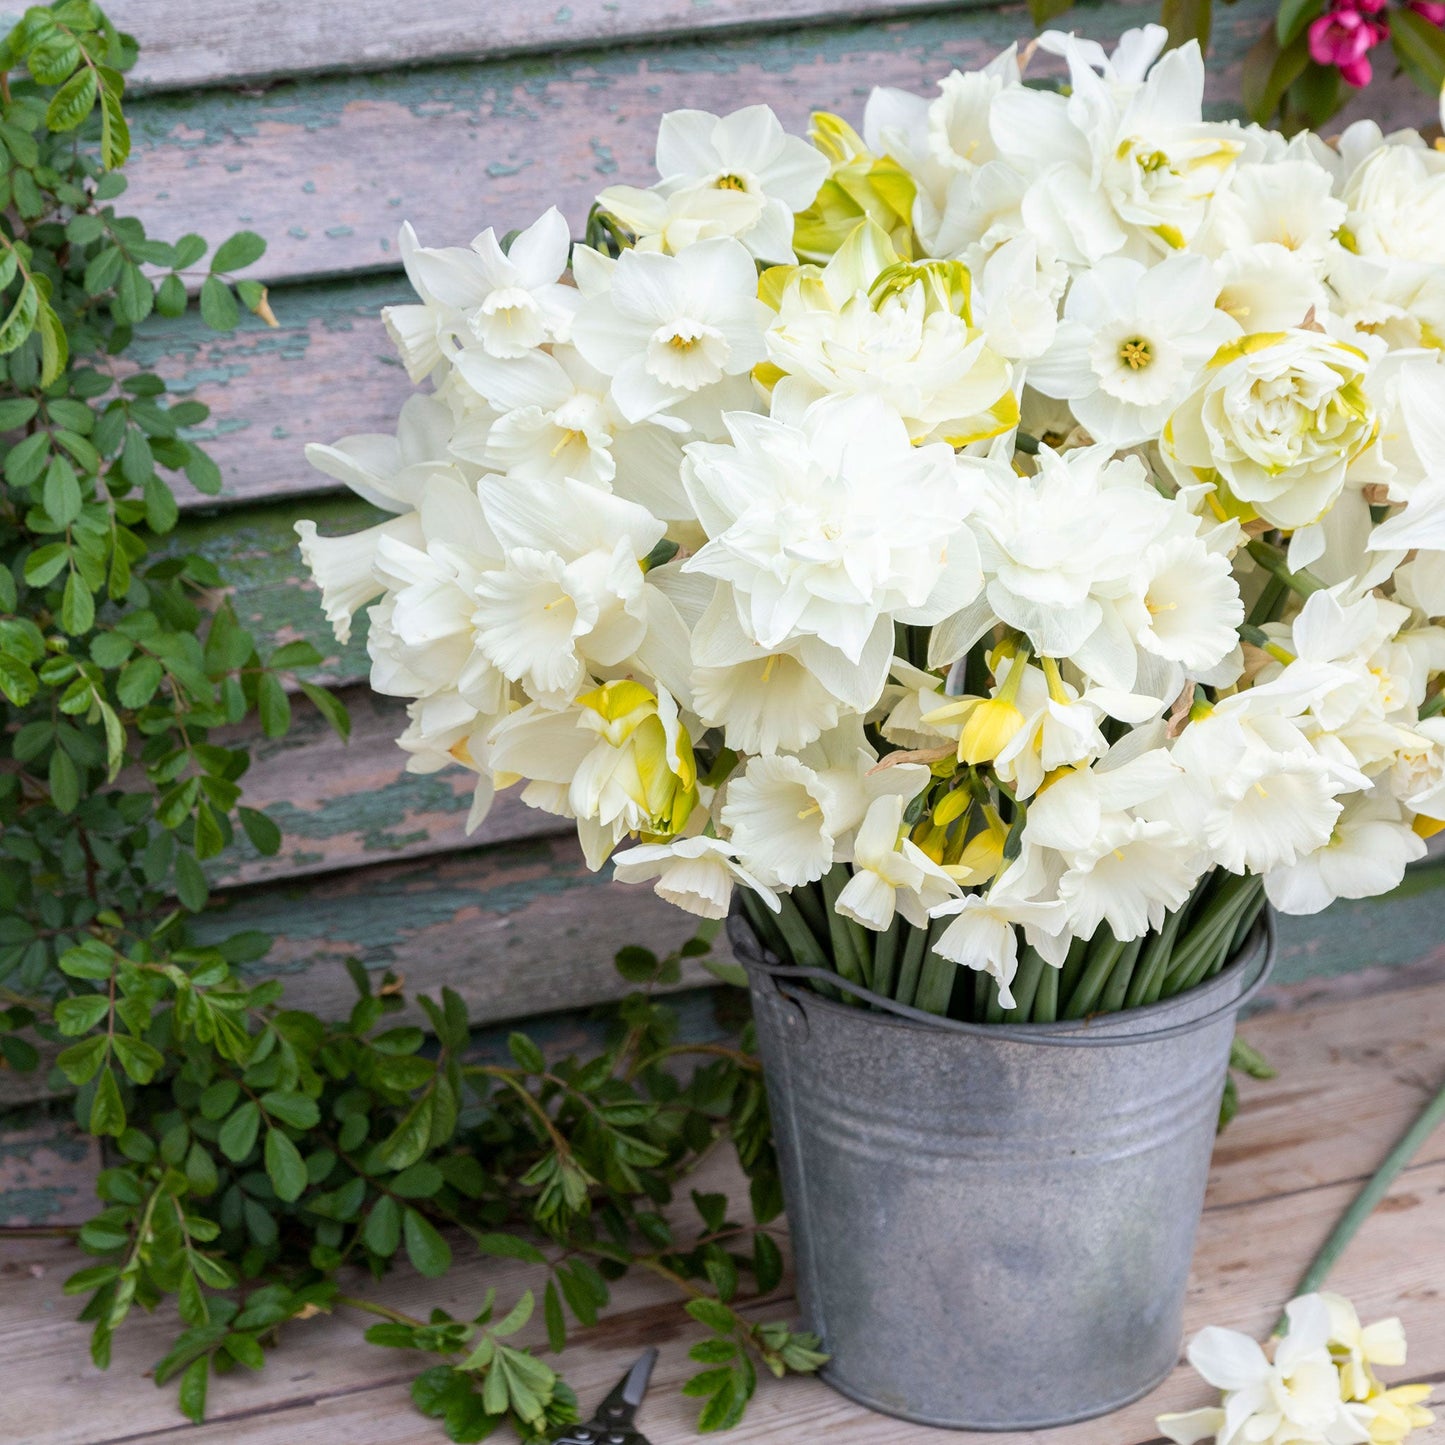 Daffodil Bulbs - All White Mix